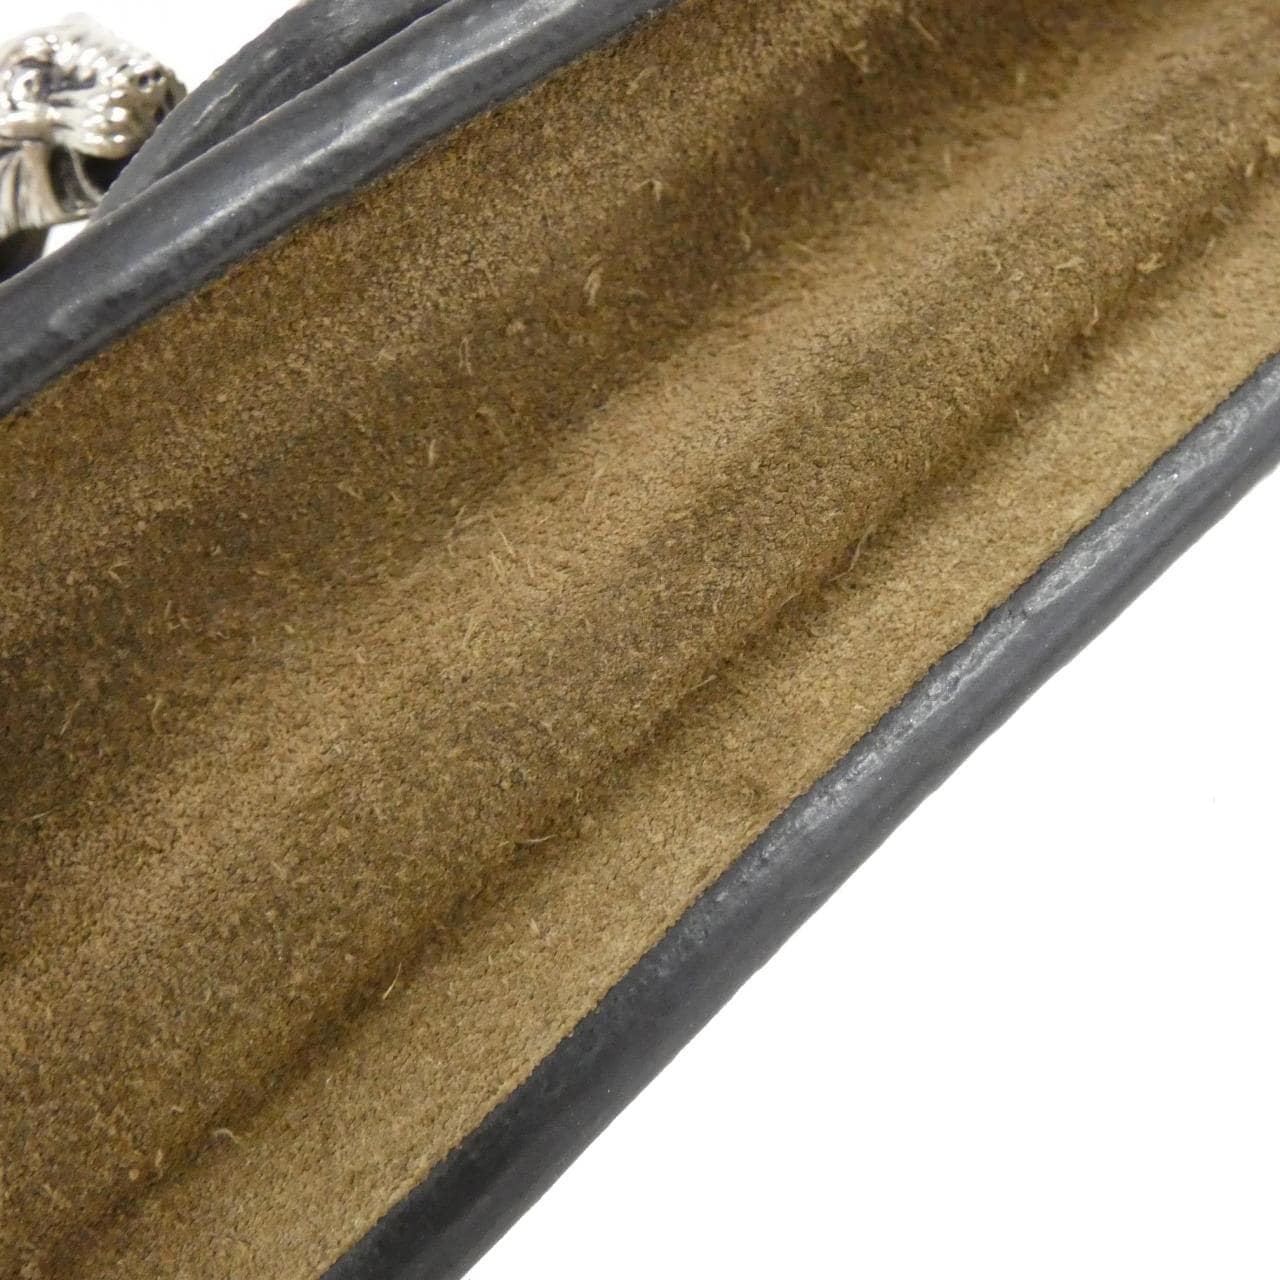 Gucci DIONYSUS 476432 KHNRN Shoulder Bag